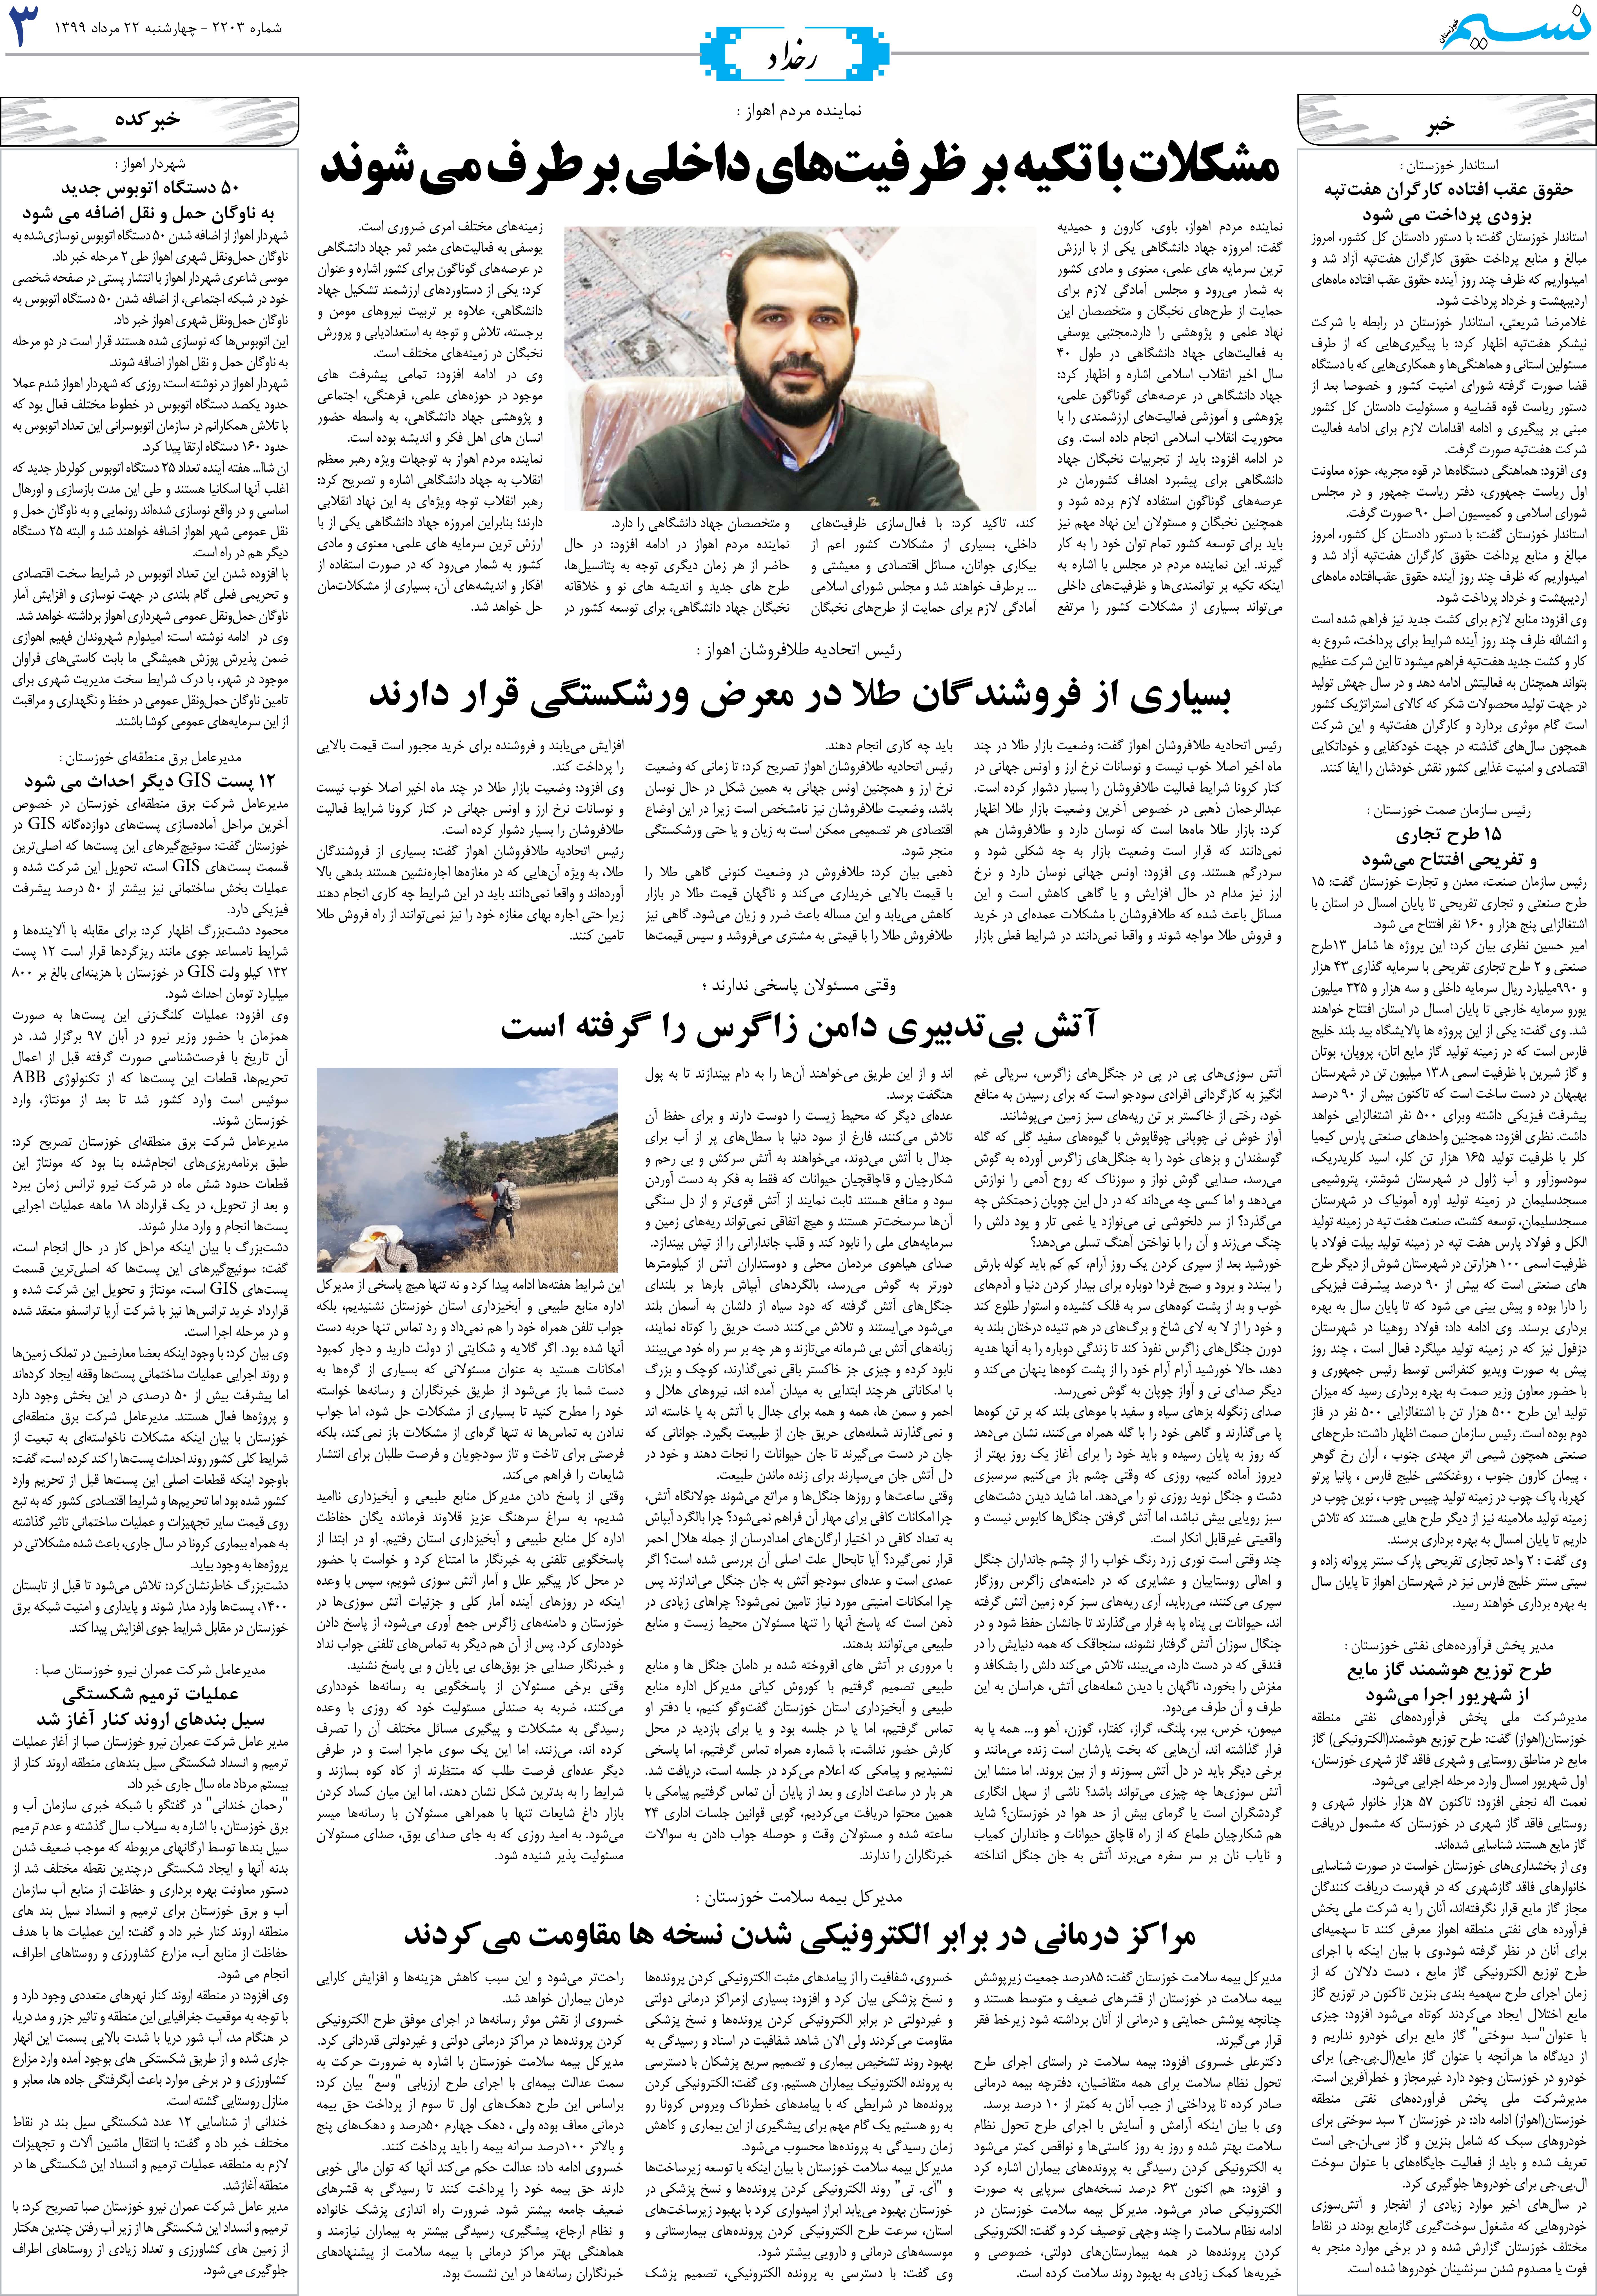 صفحه رخداد روزنامه نسیم شماره 2203